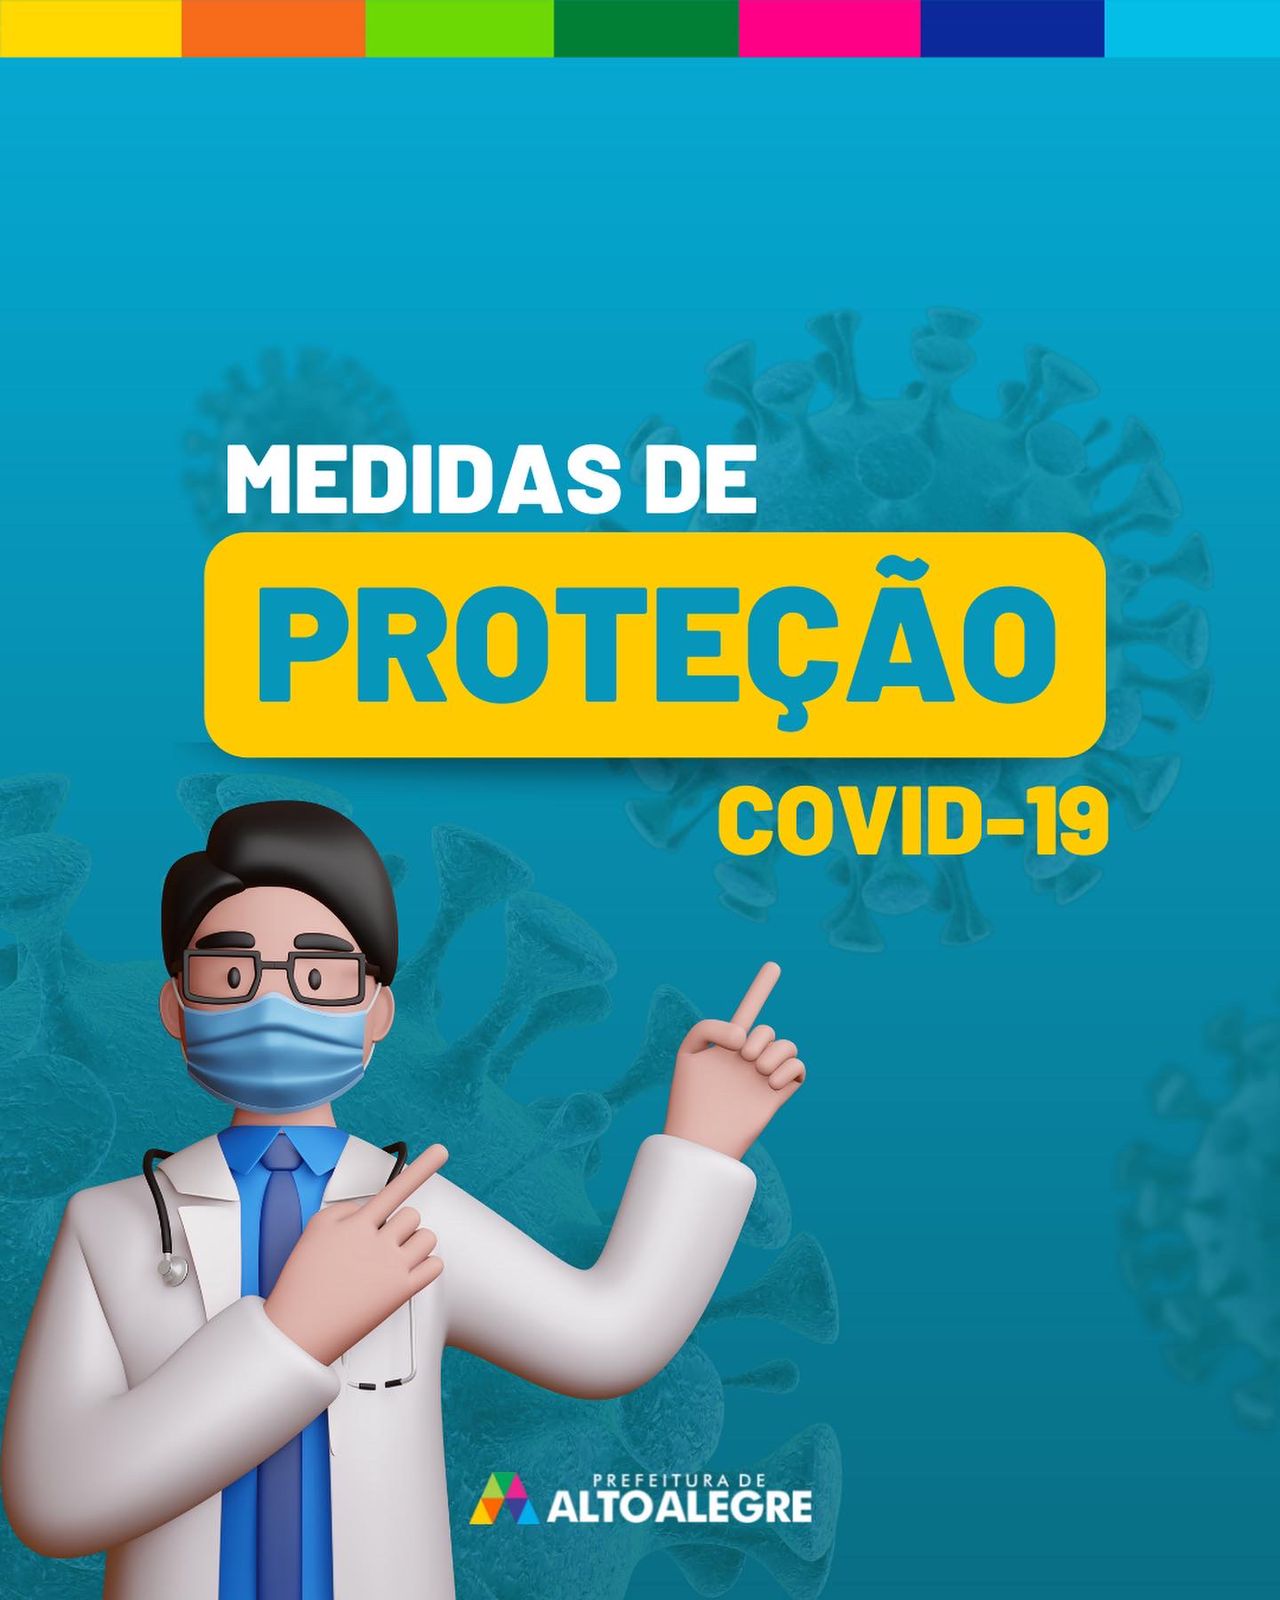 Medidas de Proteção contra Covid-19